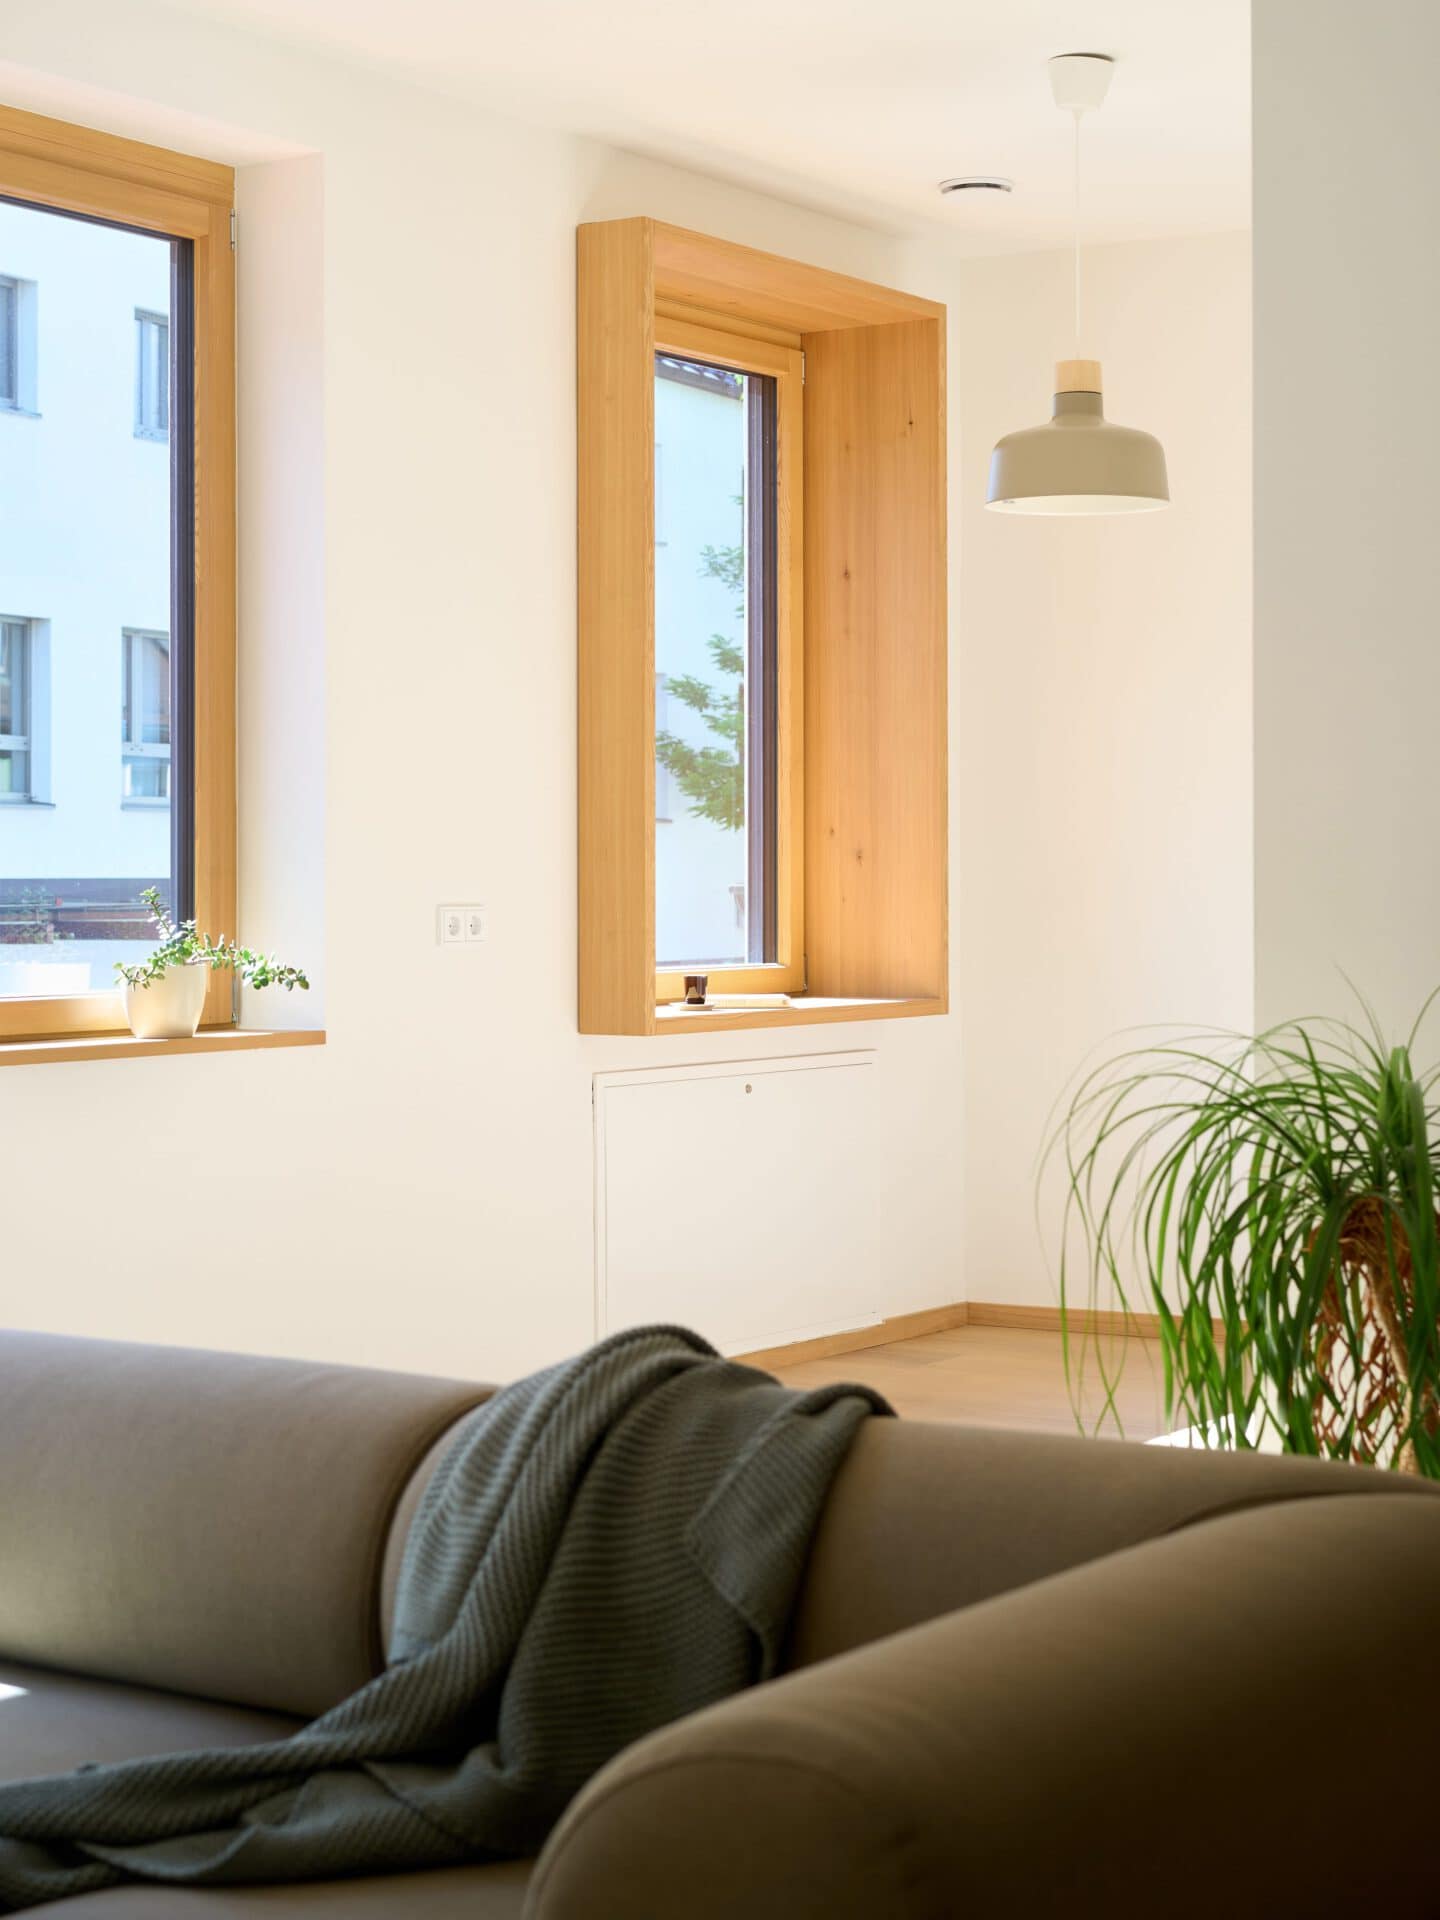 Wohnbereich mit Couch und zwei Fenstern mit Holzumrandung